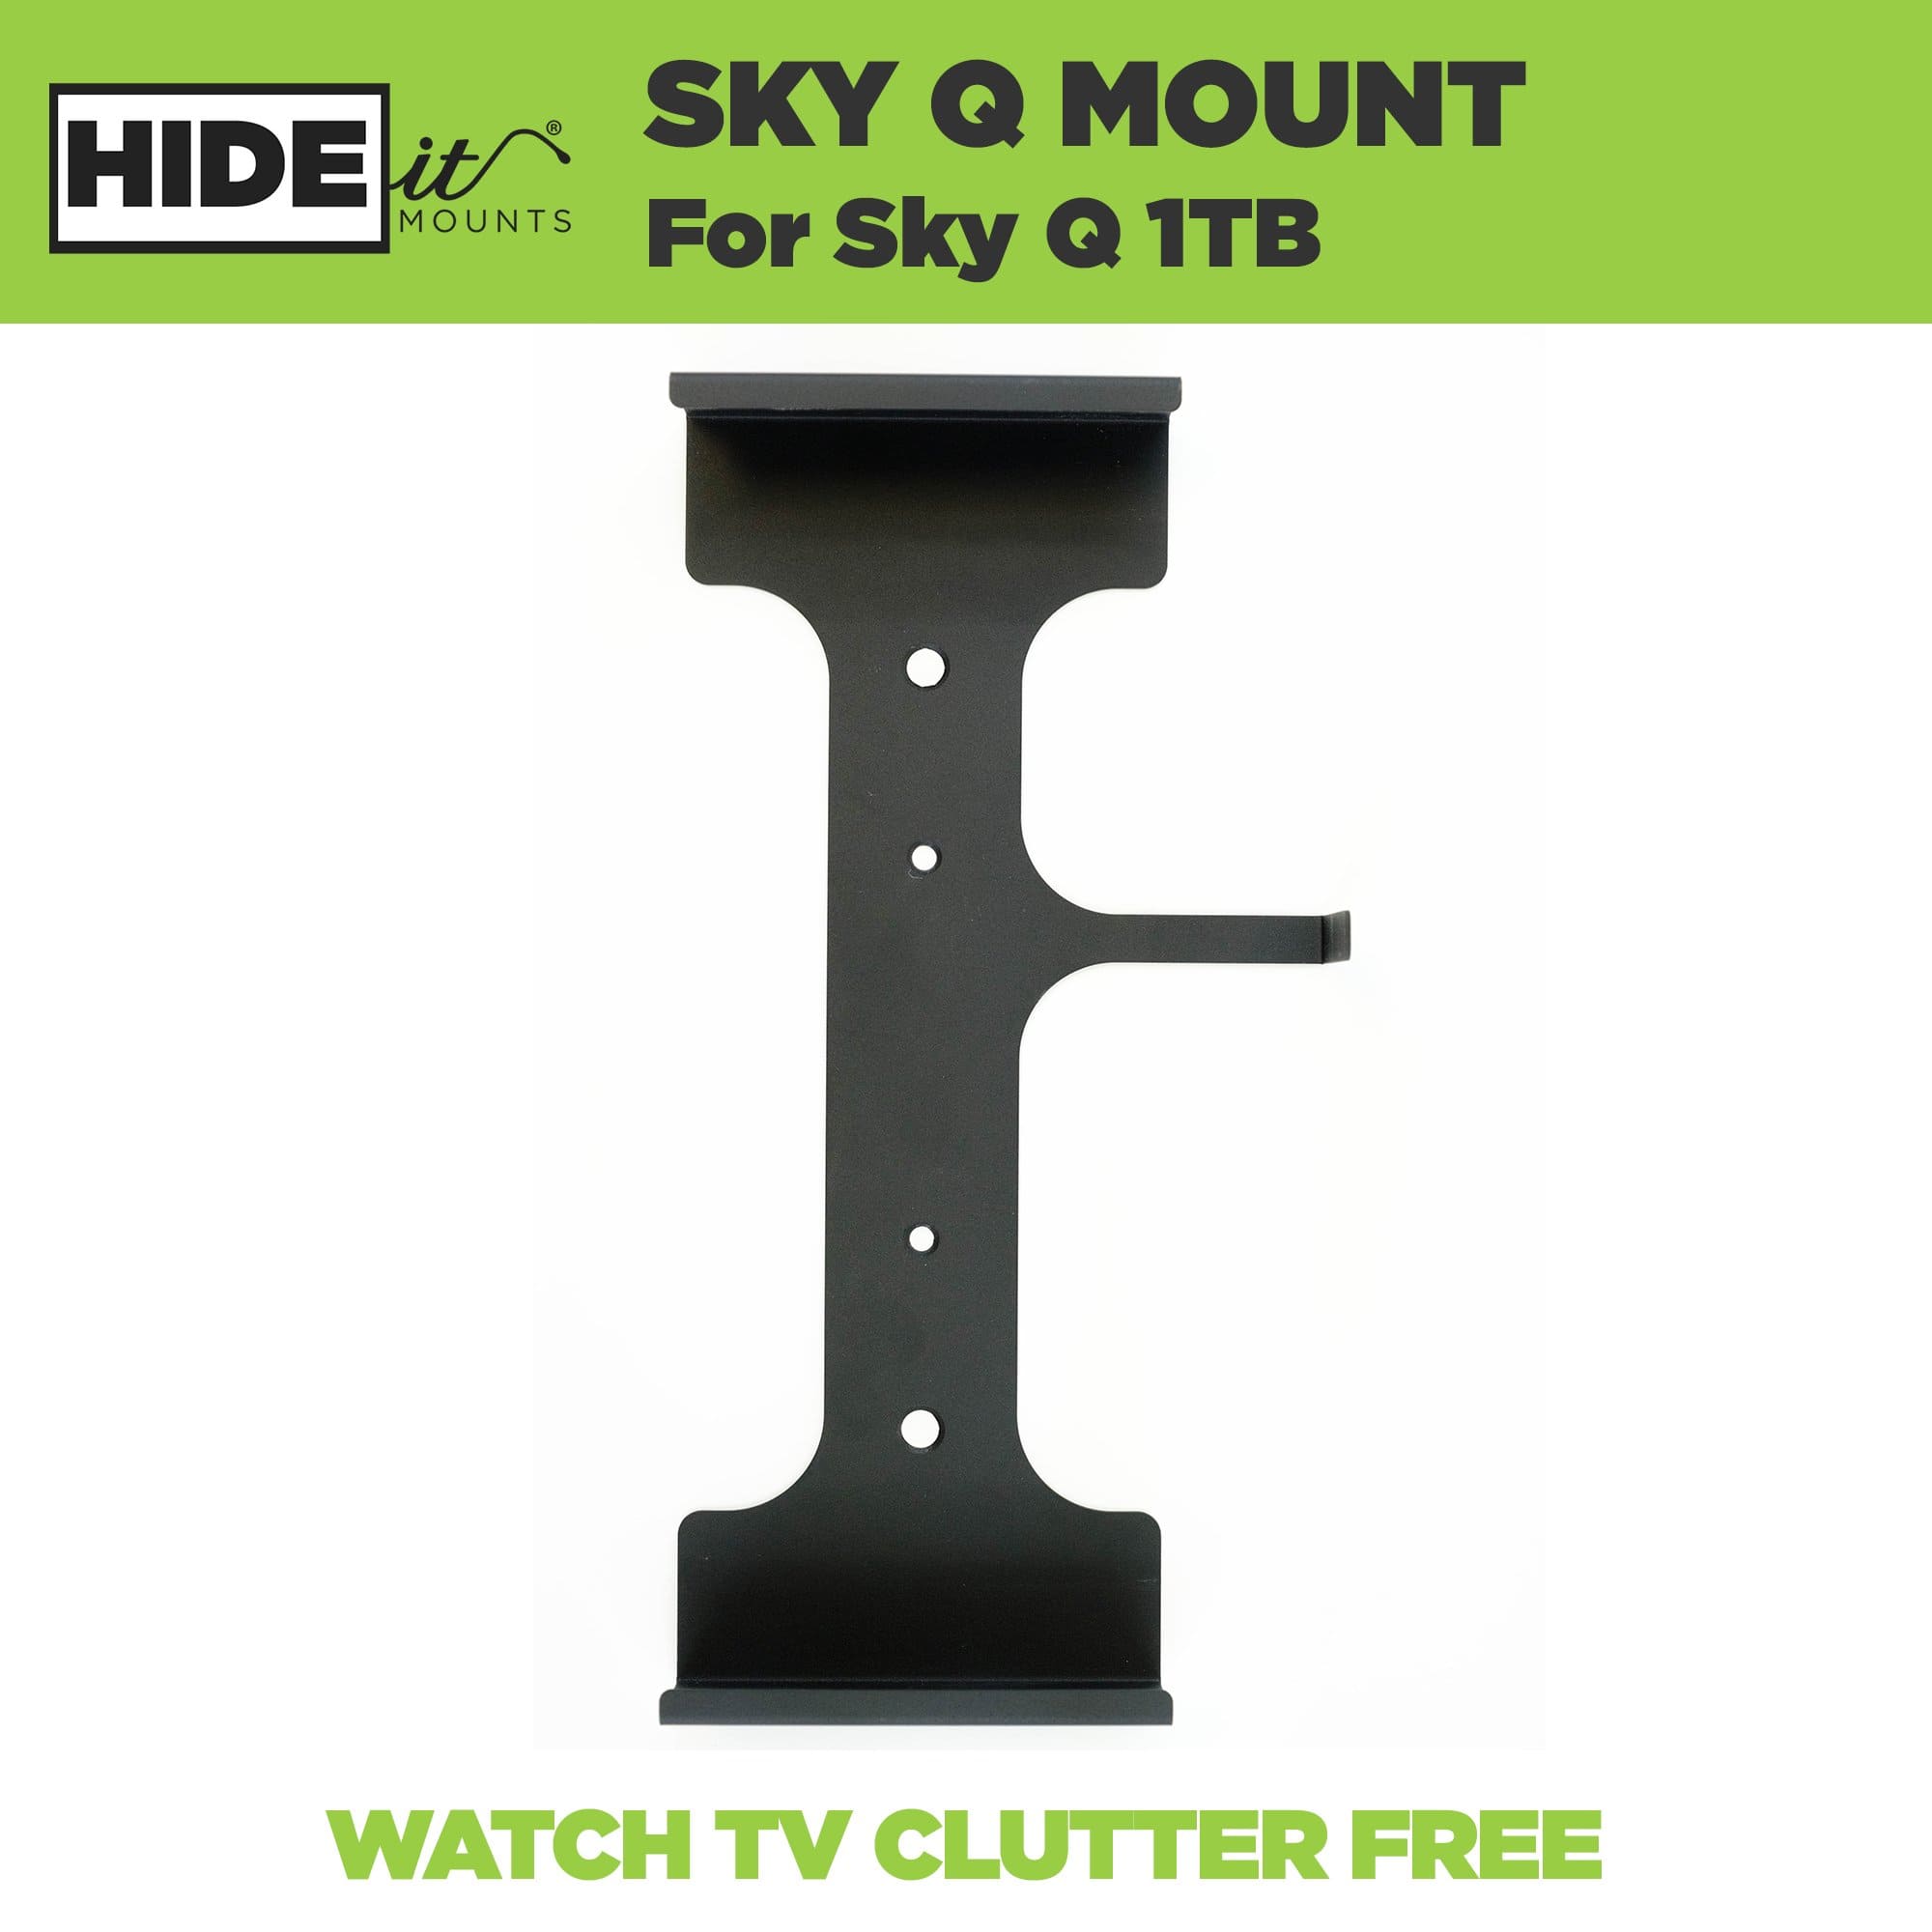 HIDEit Sky Q | 1TB Sky Q Box Wall Mount